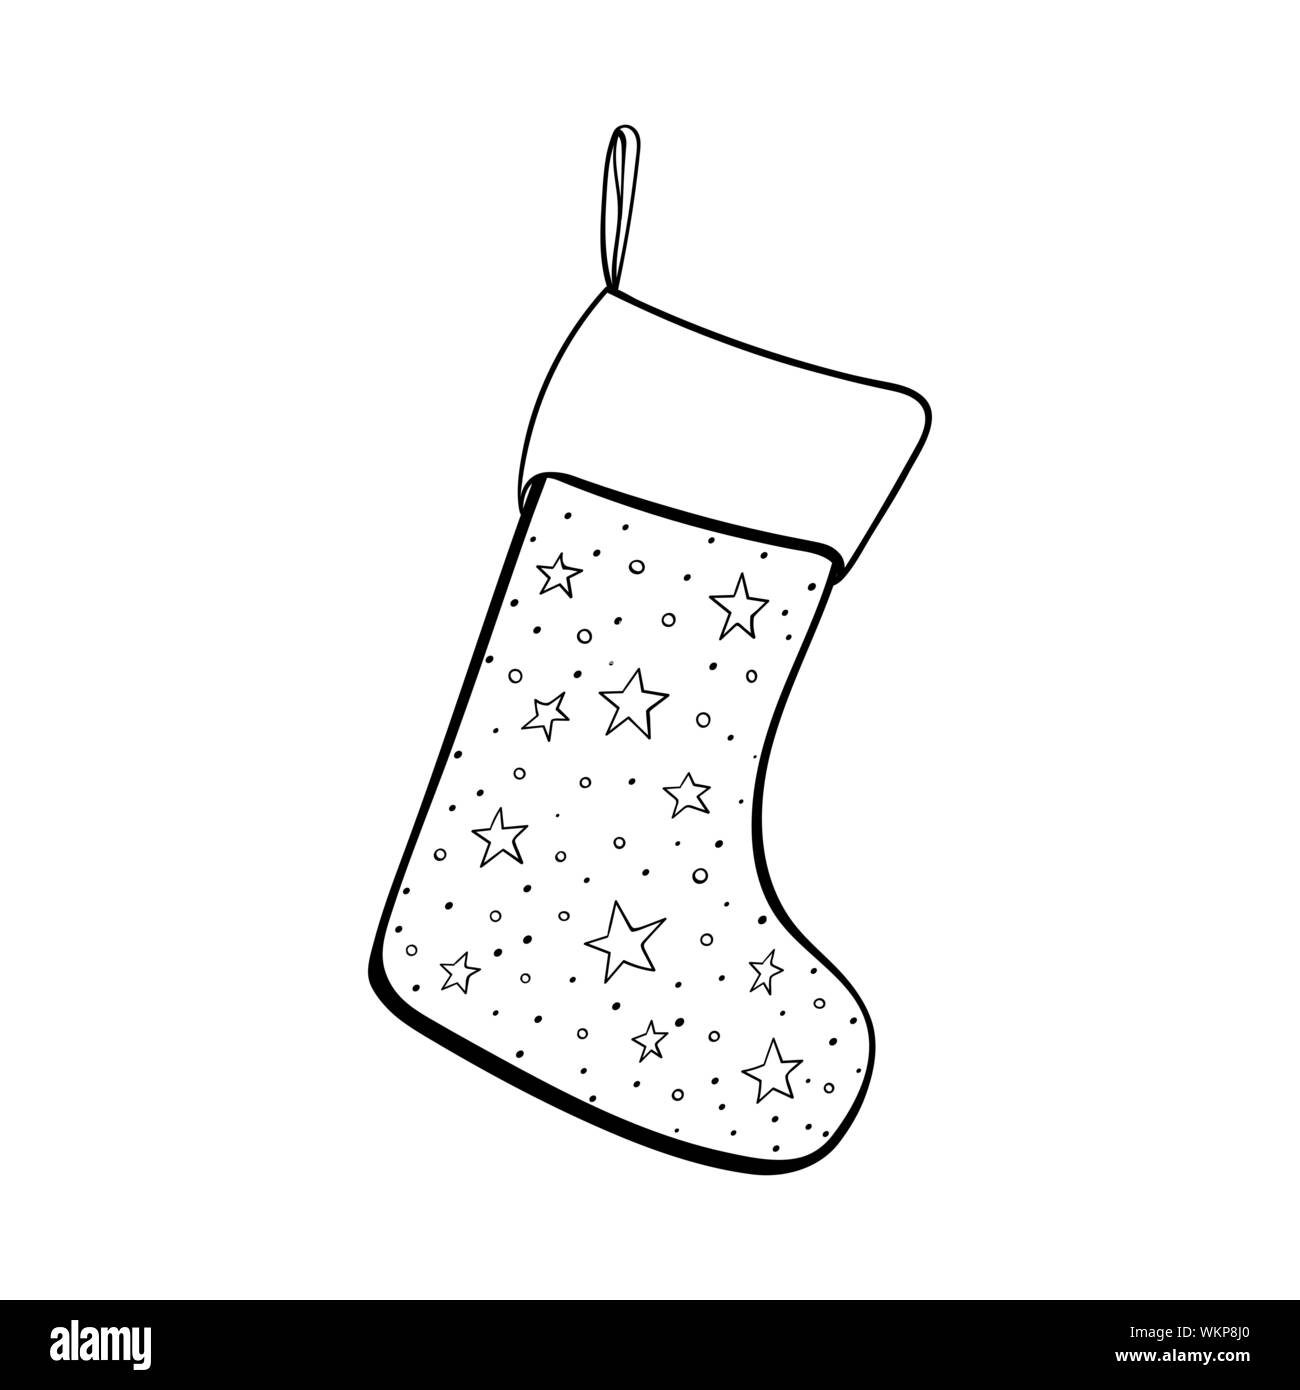 Calza di Natale disegnati a mano illustrazione vettoriale. Vuoto calza di Natale per i regali. Warm calzature con stelle pattern in bianco e nero il disegno. Vacanze inverno tradizione, nuovo anno celebrazione attributo Illustrazione Vettoriale